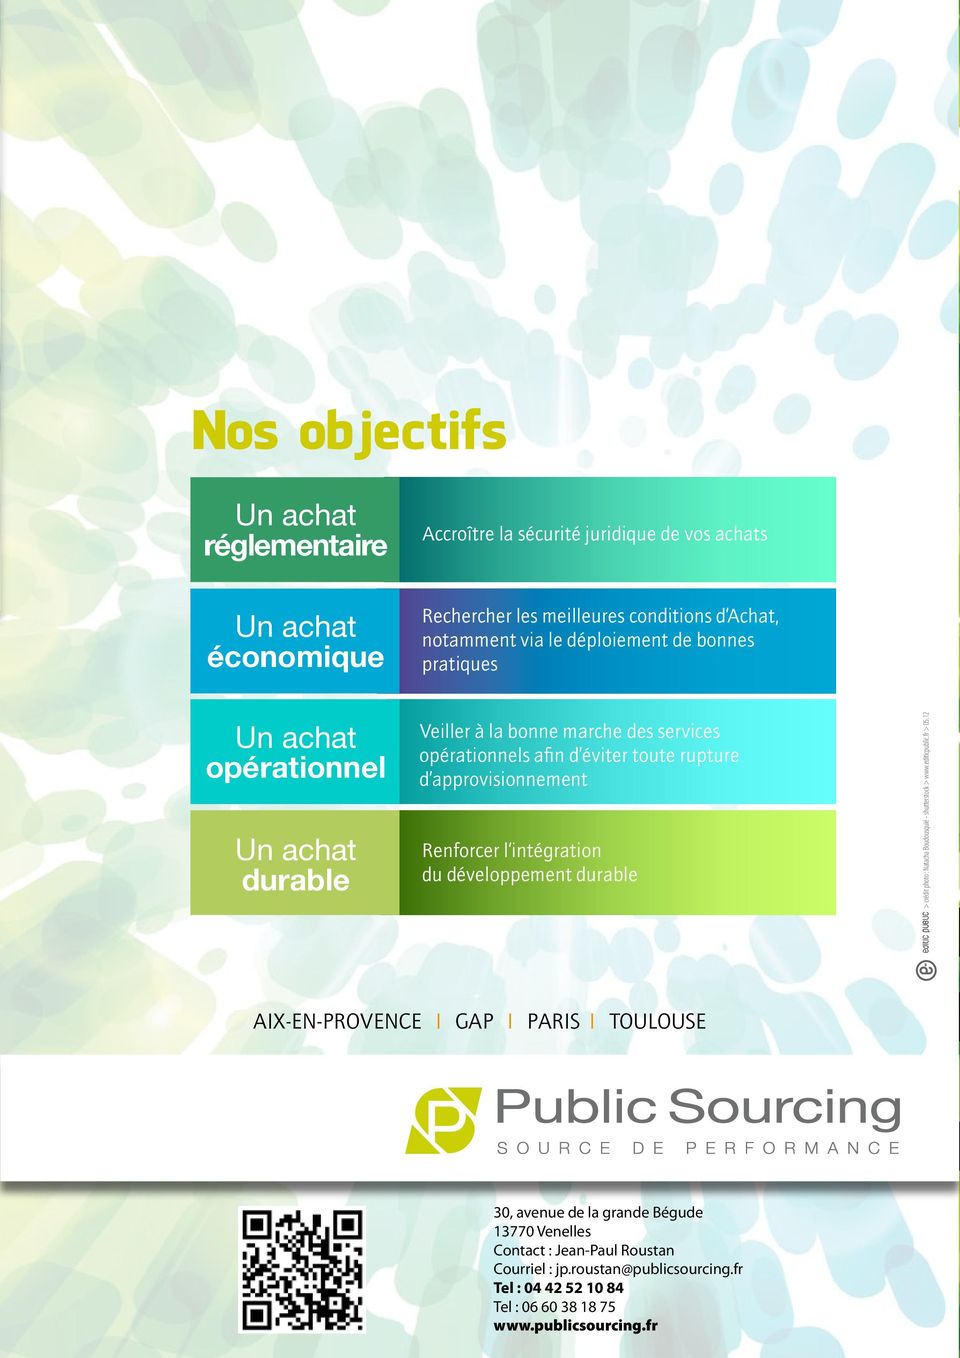 développement durable editic public > crédit photo : Natacha Boudousquié - shutterstock > www.editicpublic.fr > 05.